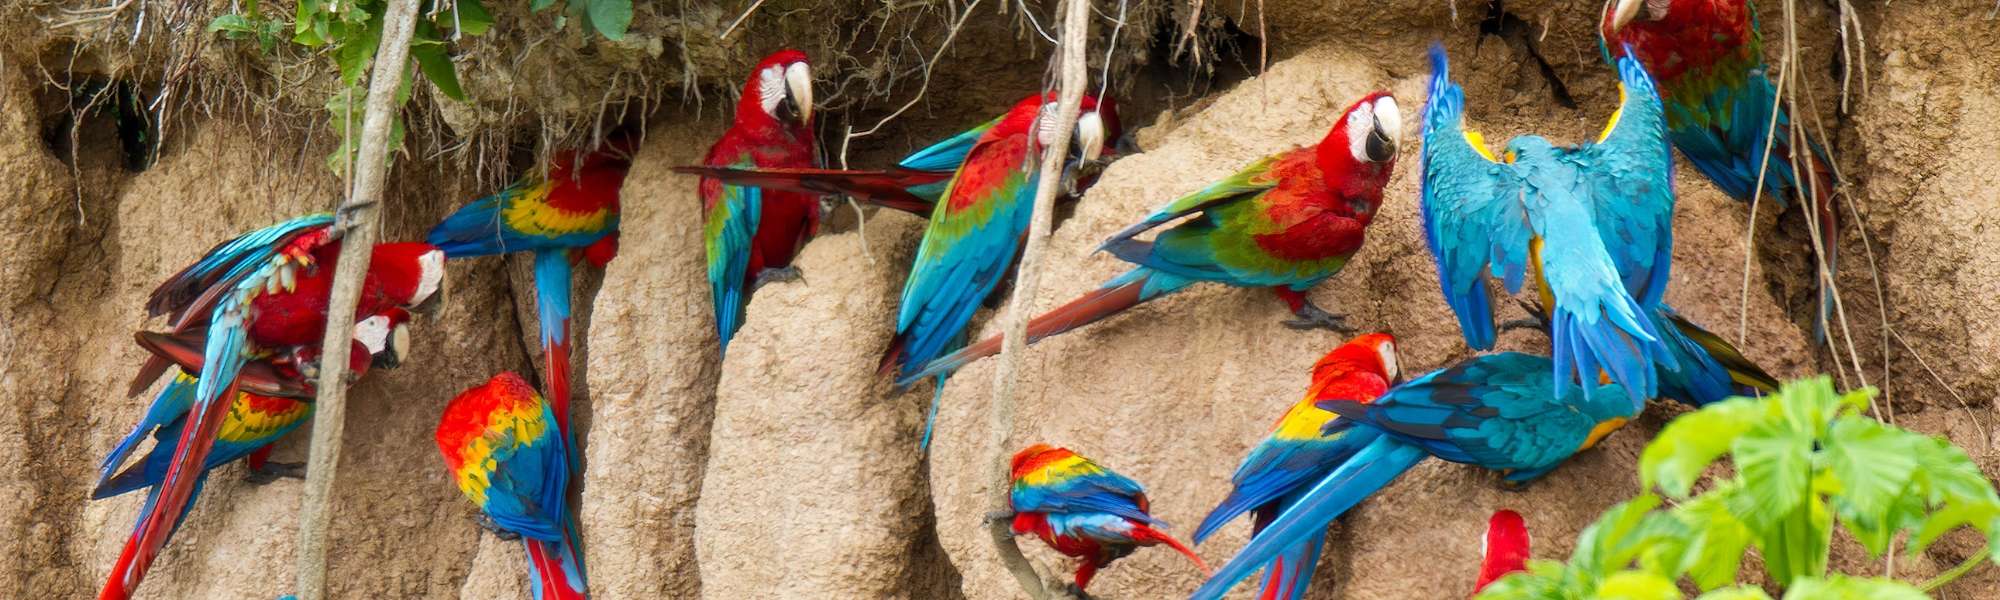 Free as a bird: forensic genomics to stop wildlife trafficking